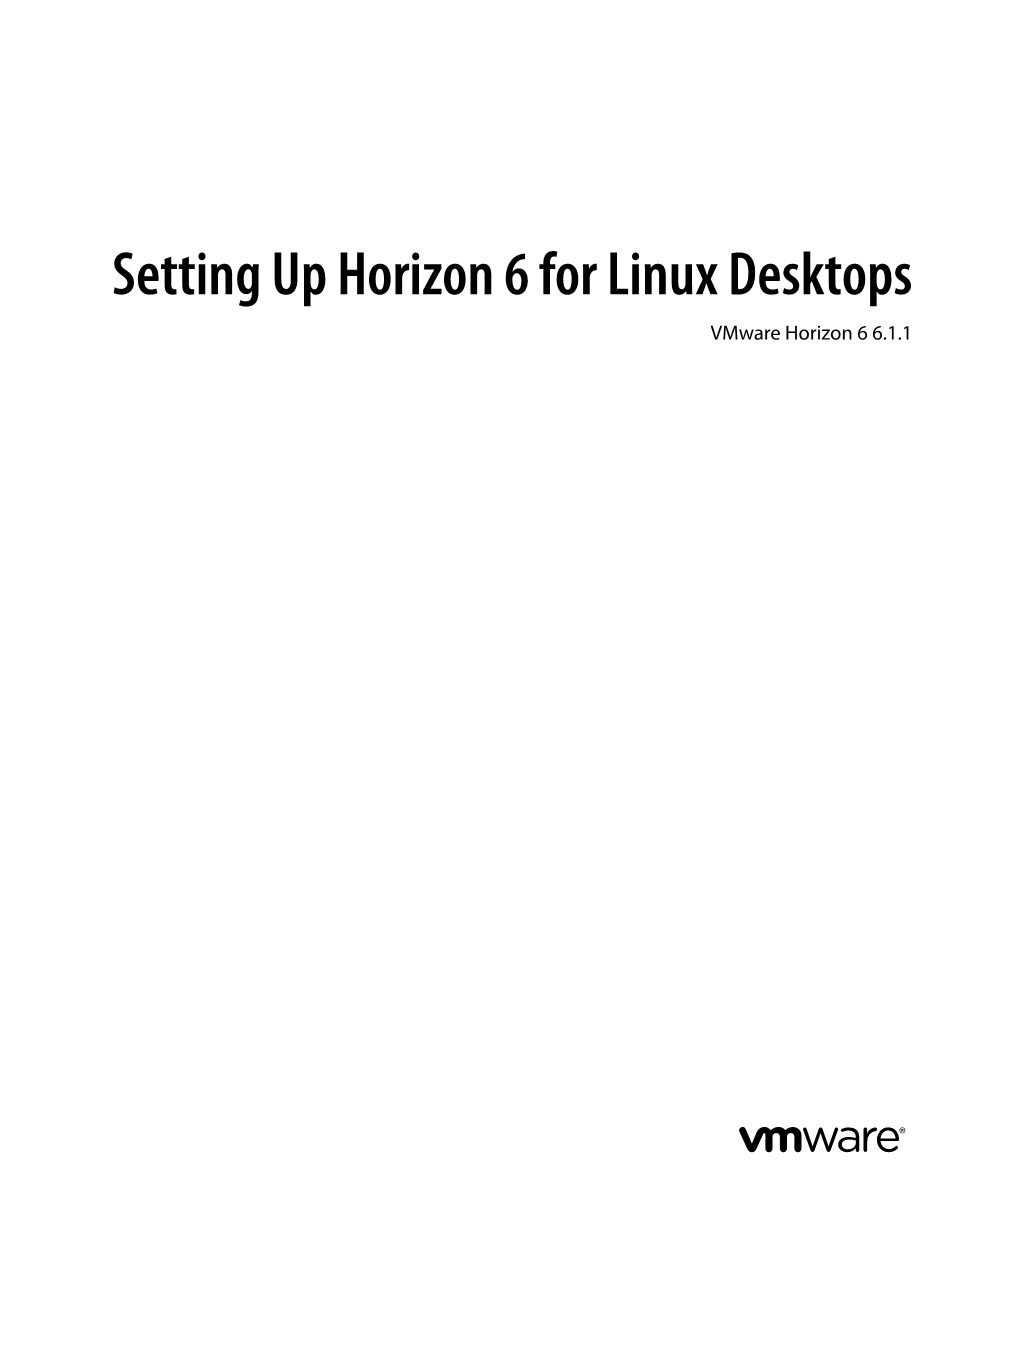 Setting up Horizon 6 for Linux Desktops Vmware Horizon 6 6.1.1 Setting up Horizon 6 for Linux Desktops